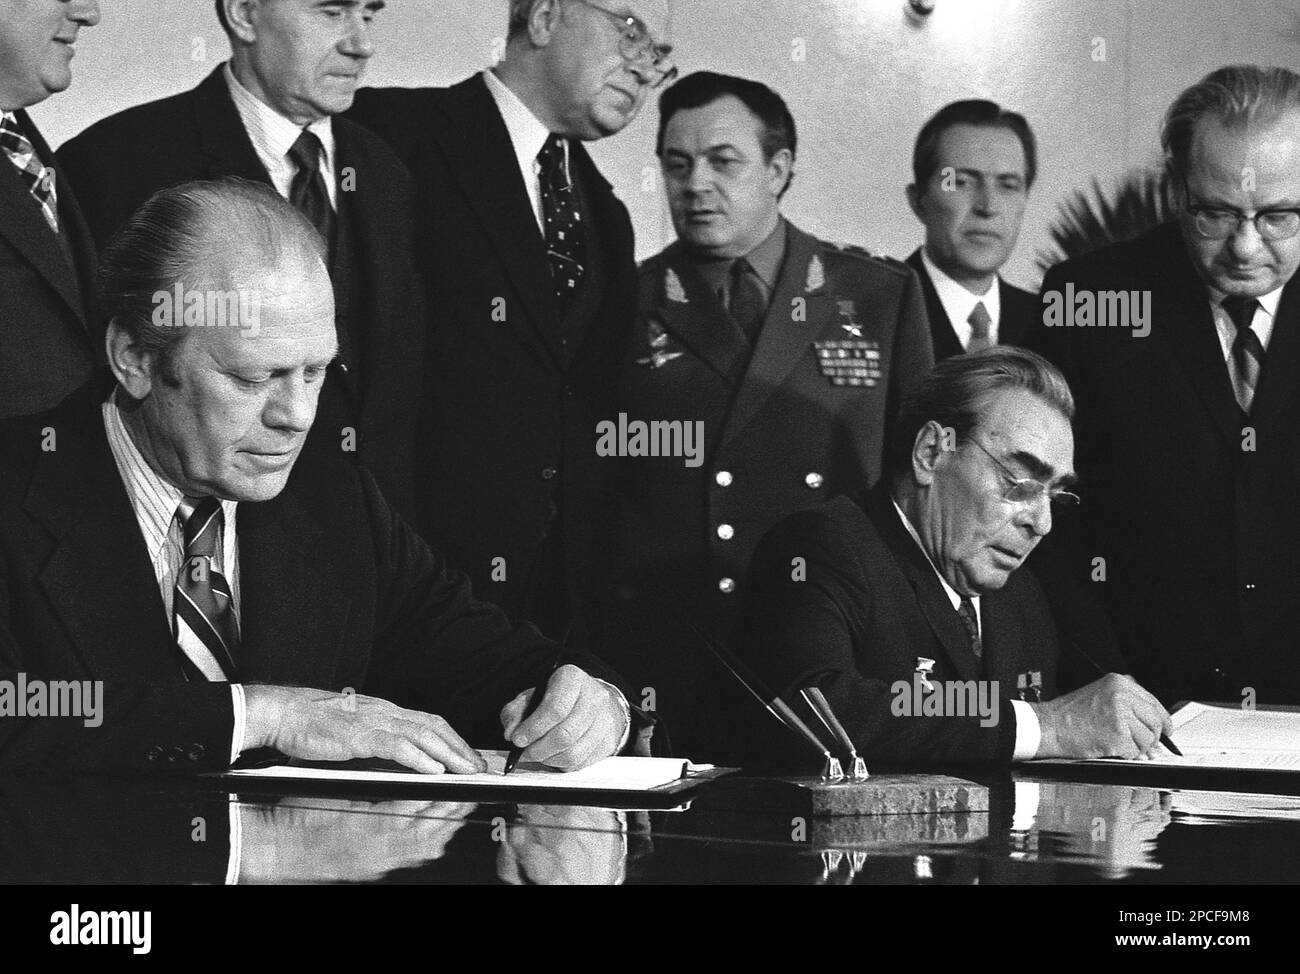 1974 : der russische Politikerpräsident Leonid Iljitsch Breschnev ( 1906 - 1982 ) und der US-Präsident GERALD FORD ( 1913 - 2006 ) unterzeichnen nach Gesprächen über die Begrenzung strategischer Offensivwaffen ein gemeinsames Kommuniqué. Das Dokument wurde in der Konferenzhalle des Okeansky Sanitariums, Wladiwostok, UdSSR, unterzeichnet. Breschnew war von 1964 bis 1982 Generalsekretär der Kommunistischen Partei der Sowjetunion (und damit politischer Führer der Sowjetunion) und diente in dieser Position länger als jeder andere außer Joseph Stalin. Er war zweimal Vorsitzender des Präsidiums des Obersten Sowjets (Staatsoberhaupt), f Stockfoto